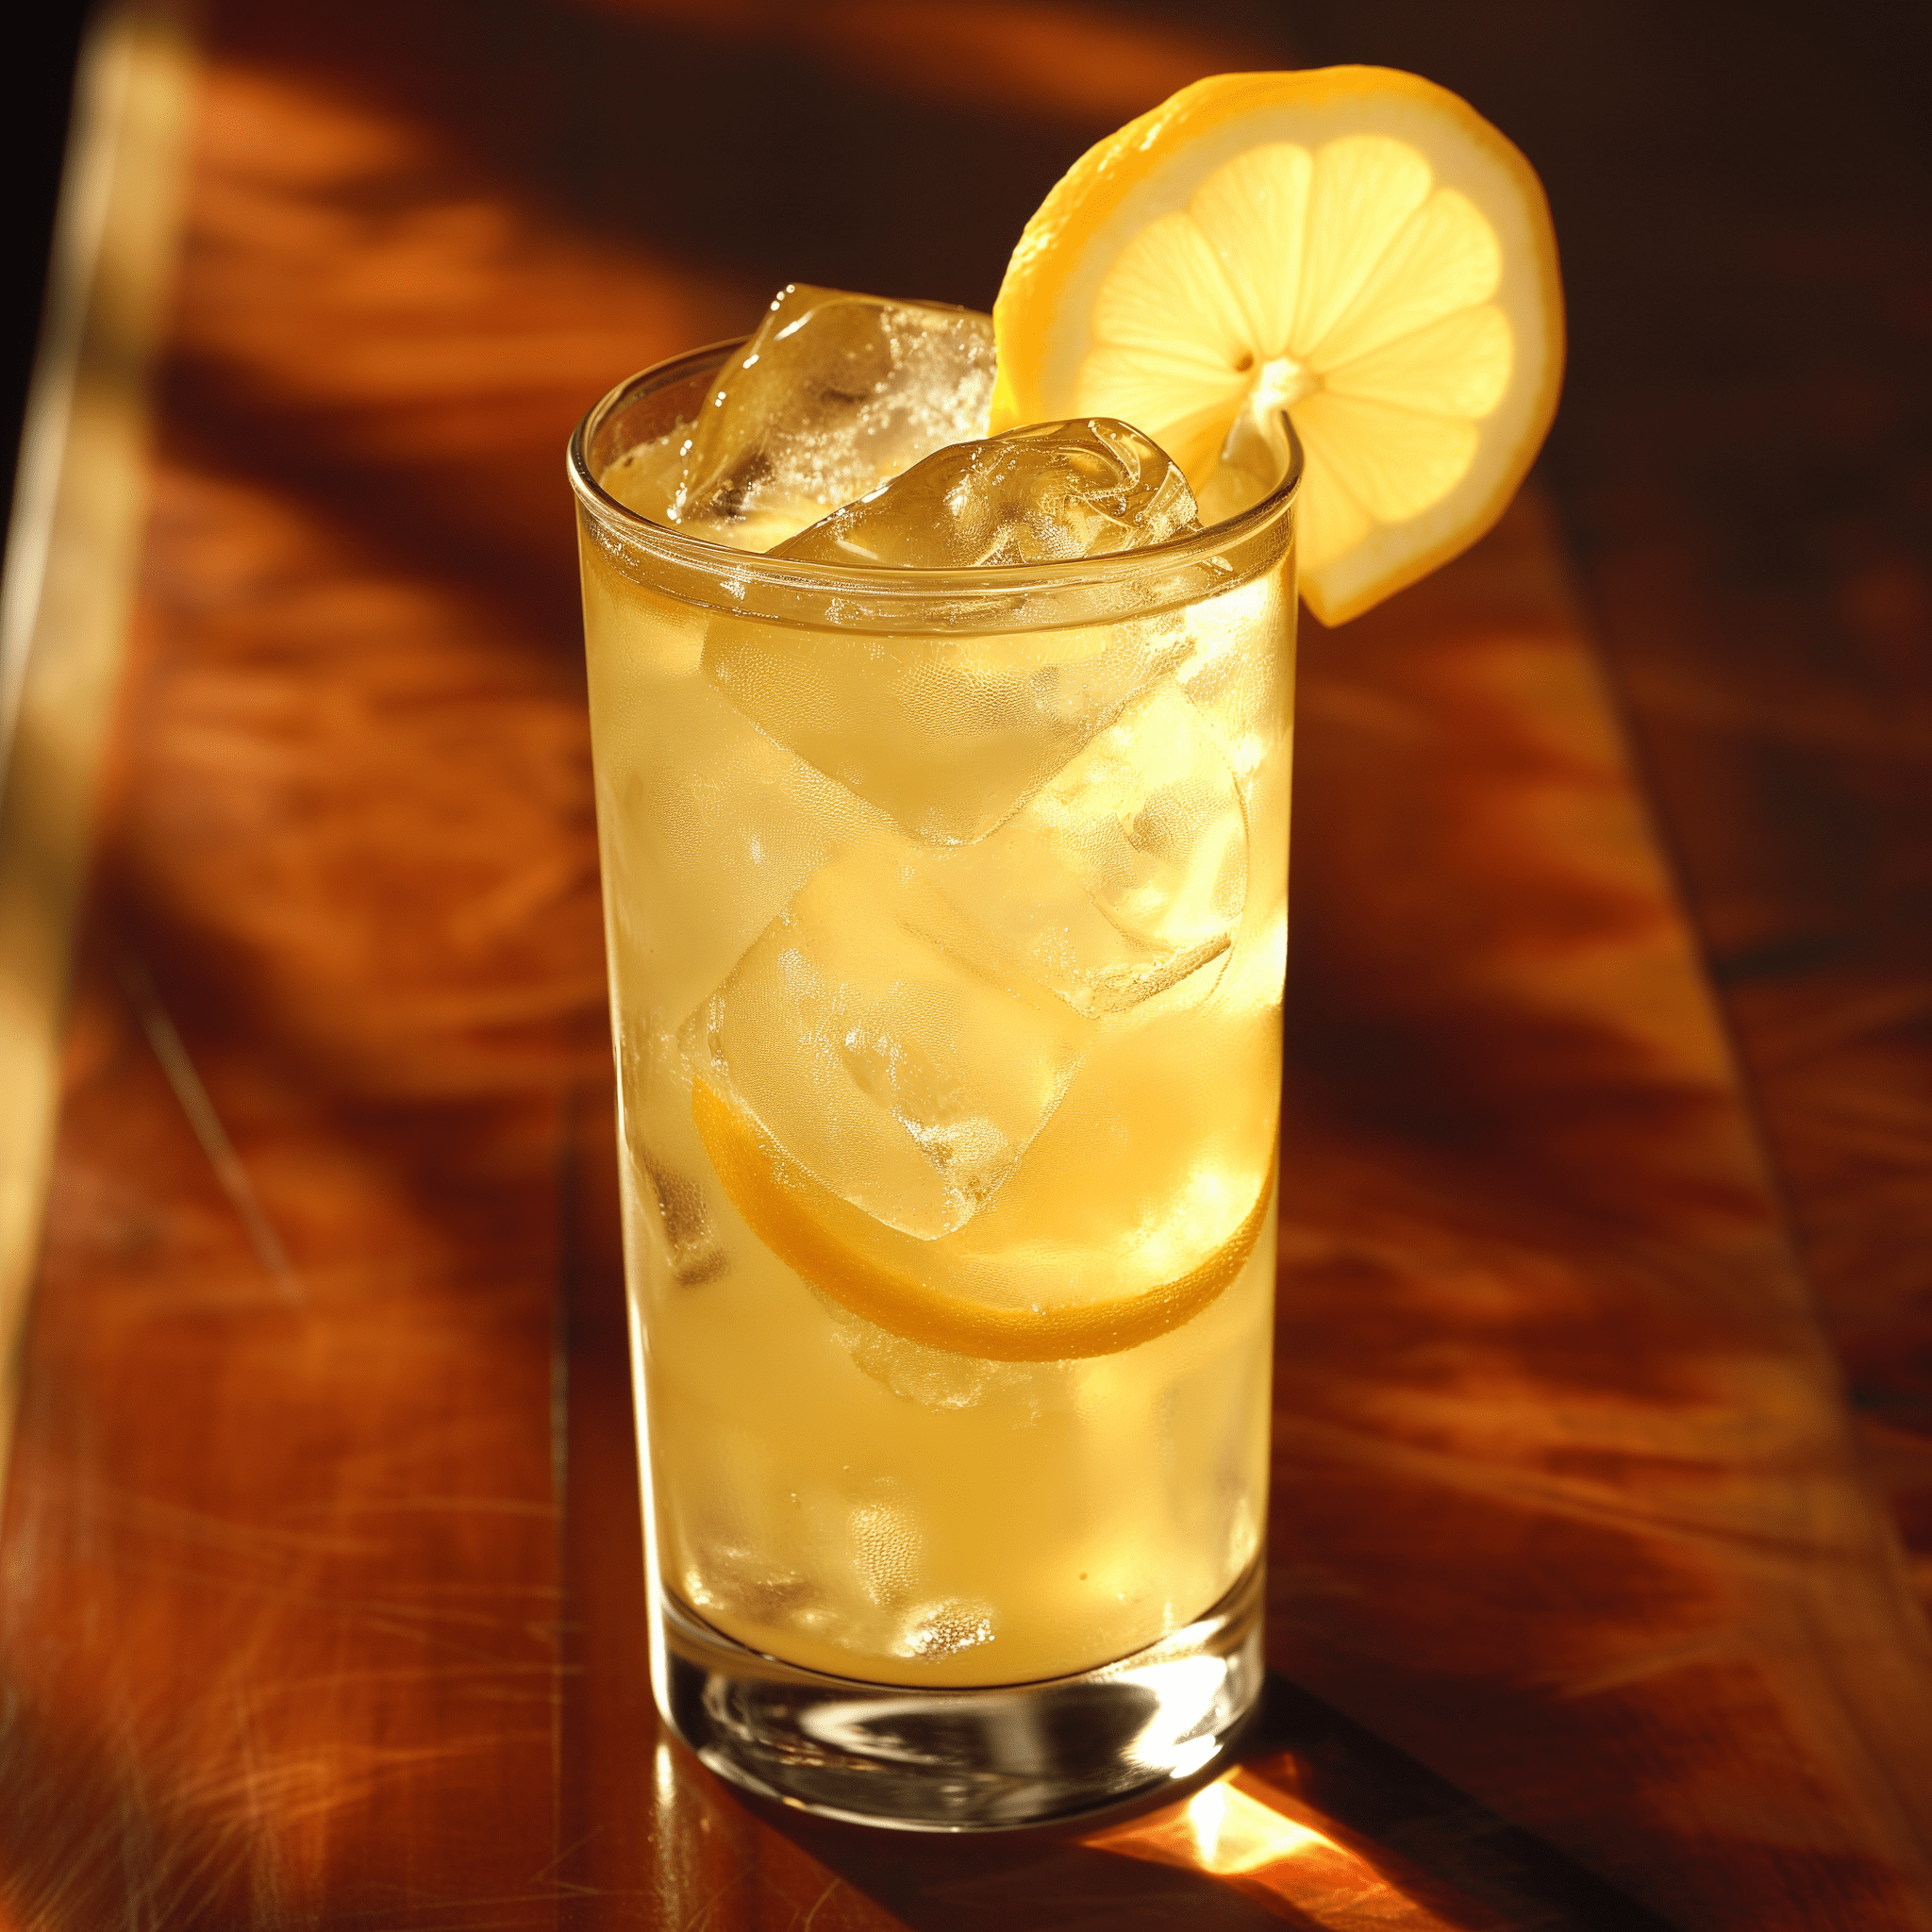 Jim Beam Lemonade Cóctel Receta - El sabor de un Jim Beam Lemonade es una armoniosa mezcla de dulce y ácido con el distintivo toque del bourbon. La limonada proporciona una base cítrica refrescante, mientras que el Jim Beam añade un sutil fondo amaderado con un toque de vainilla y caramelo.